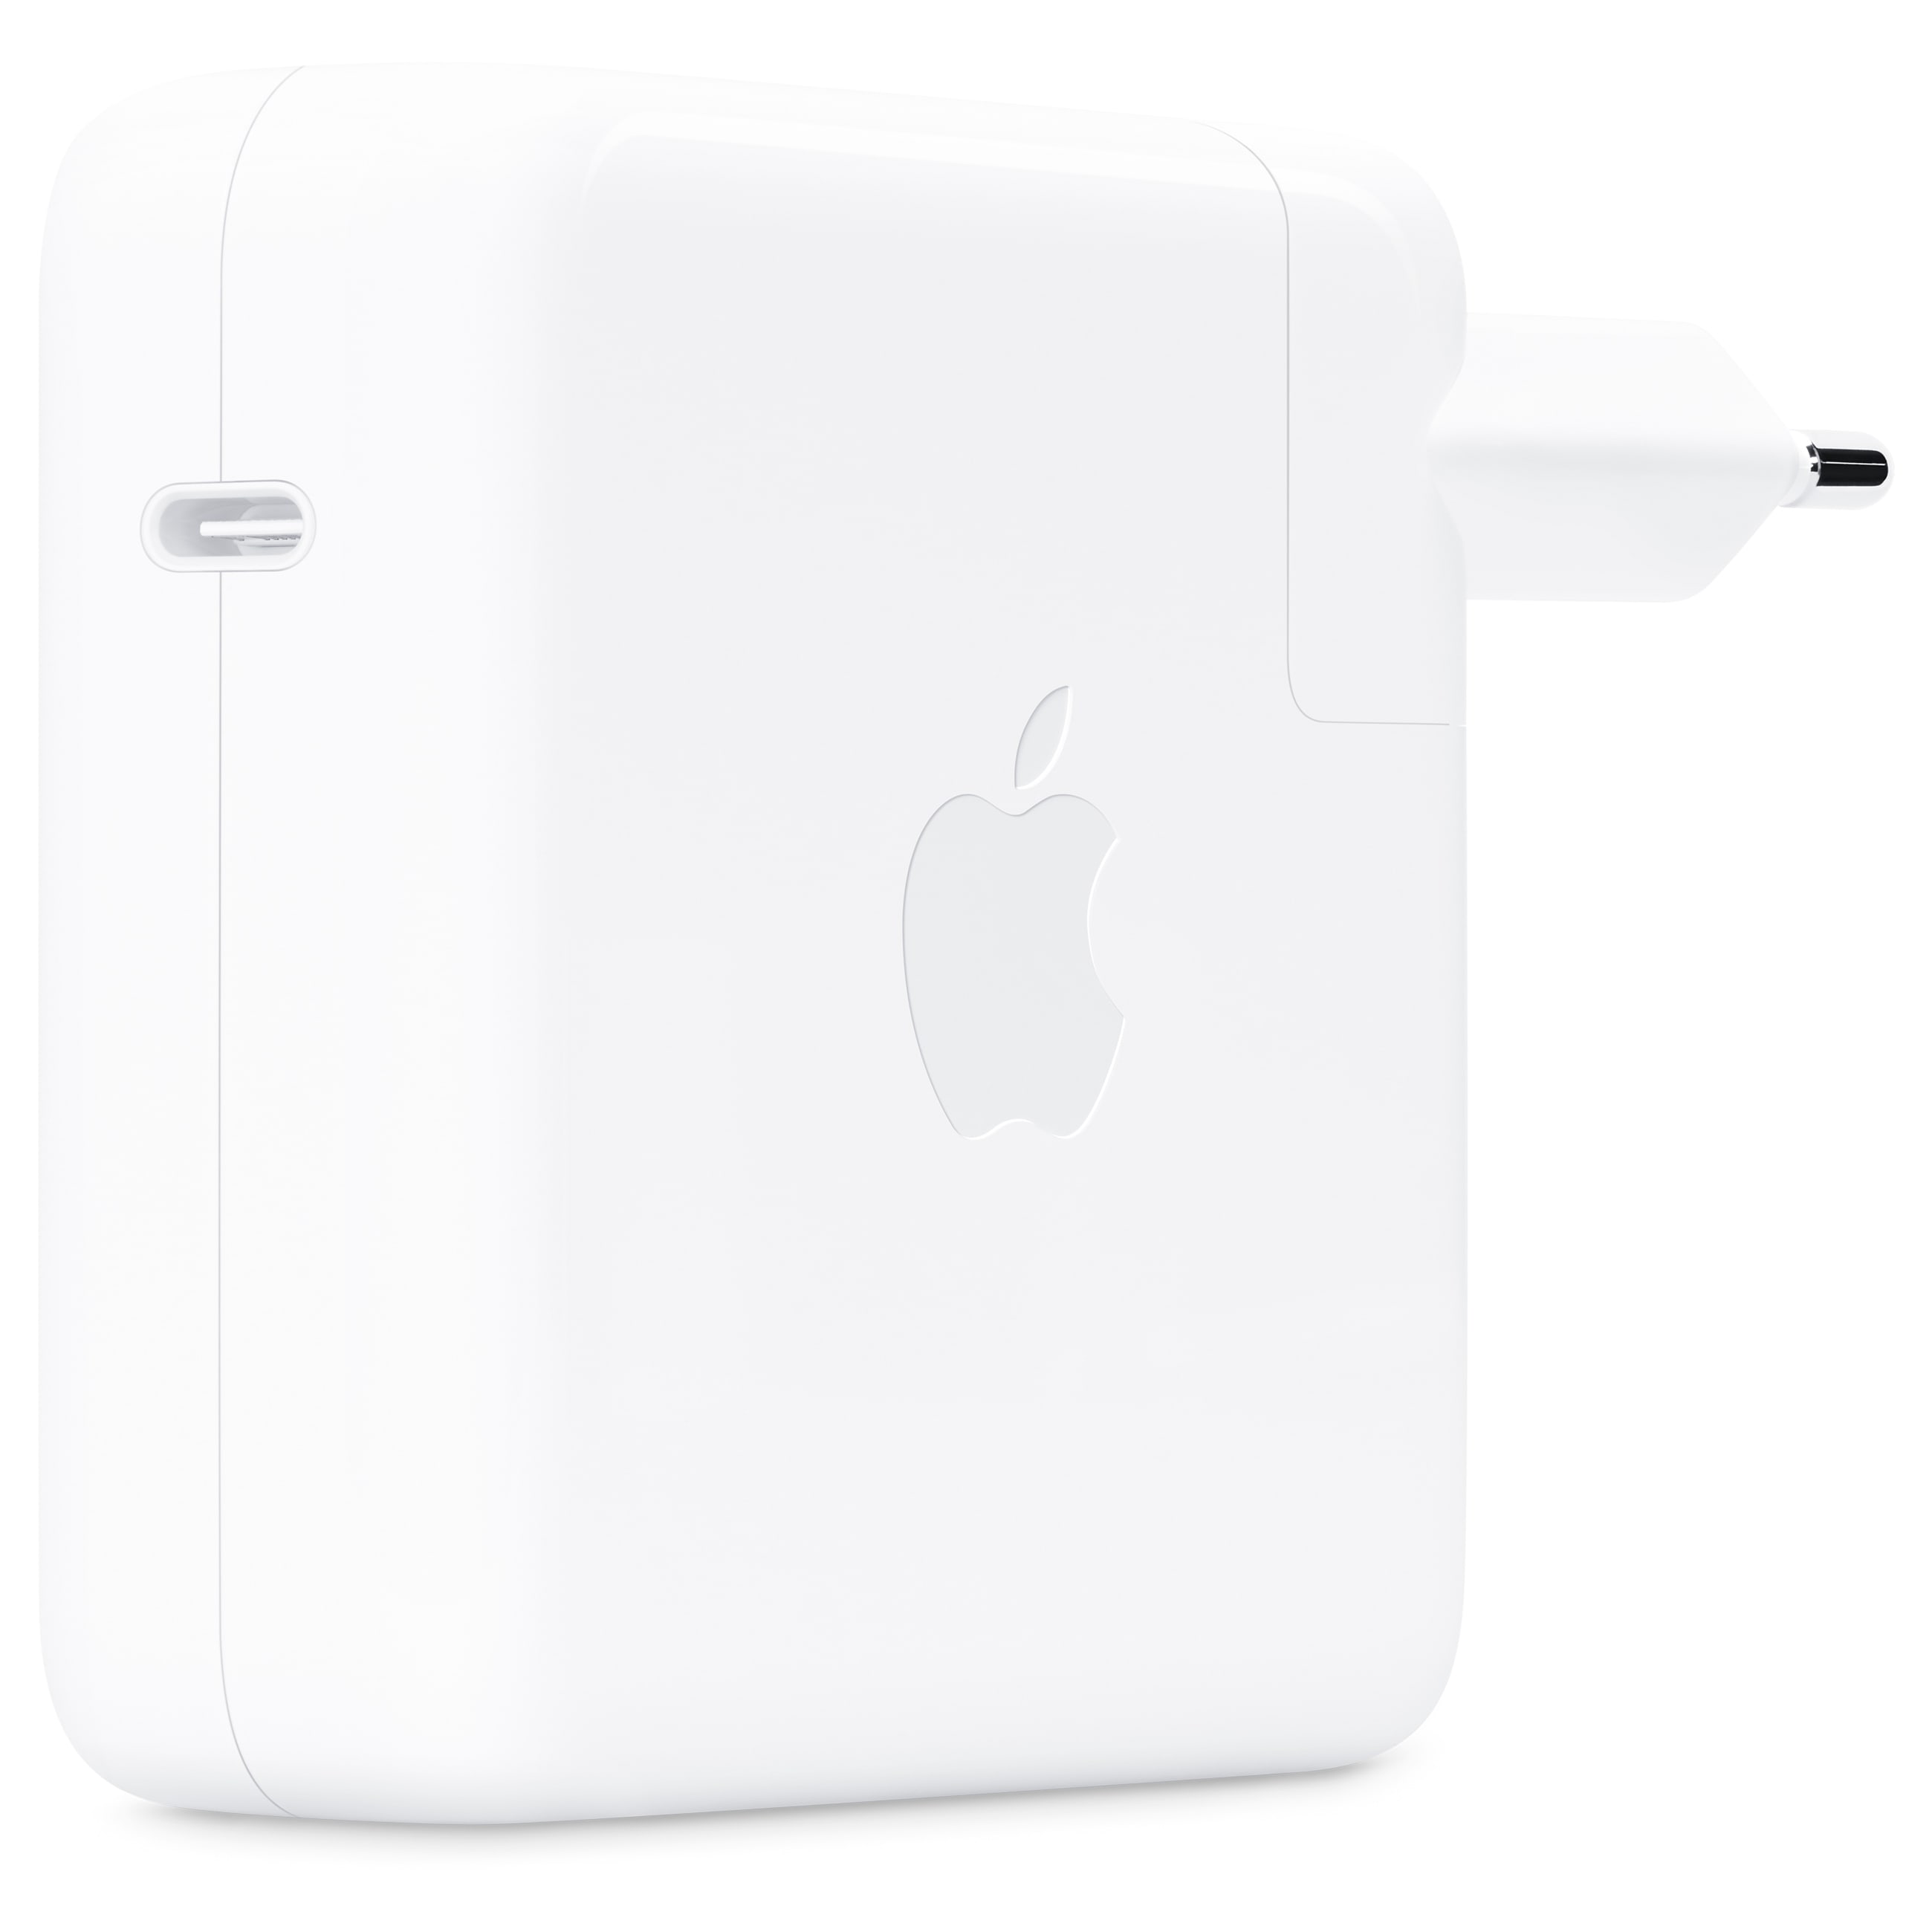 Image of Apple USB-C Power Adapter - Ladegerät für 16&quot; MacBook ProOVP geöffnet - geöffnet